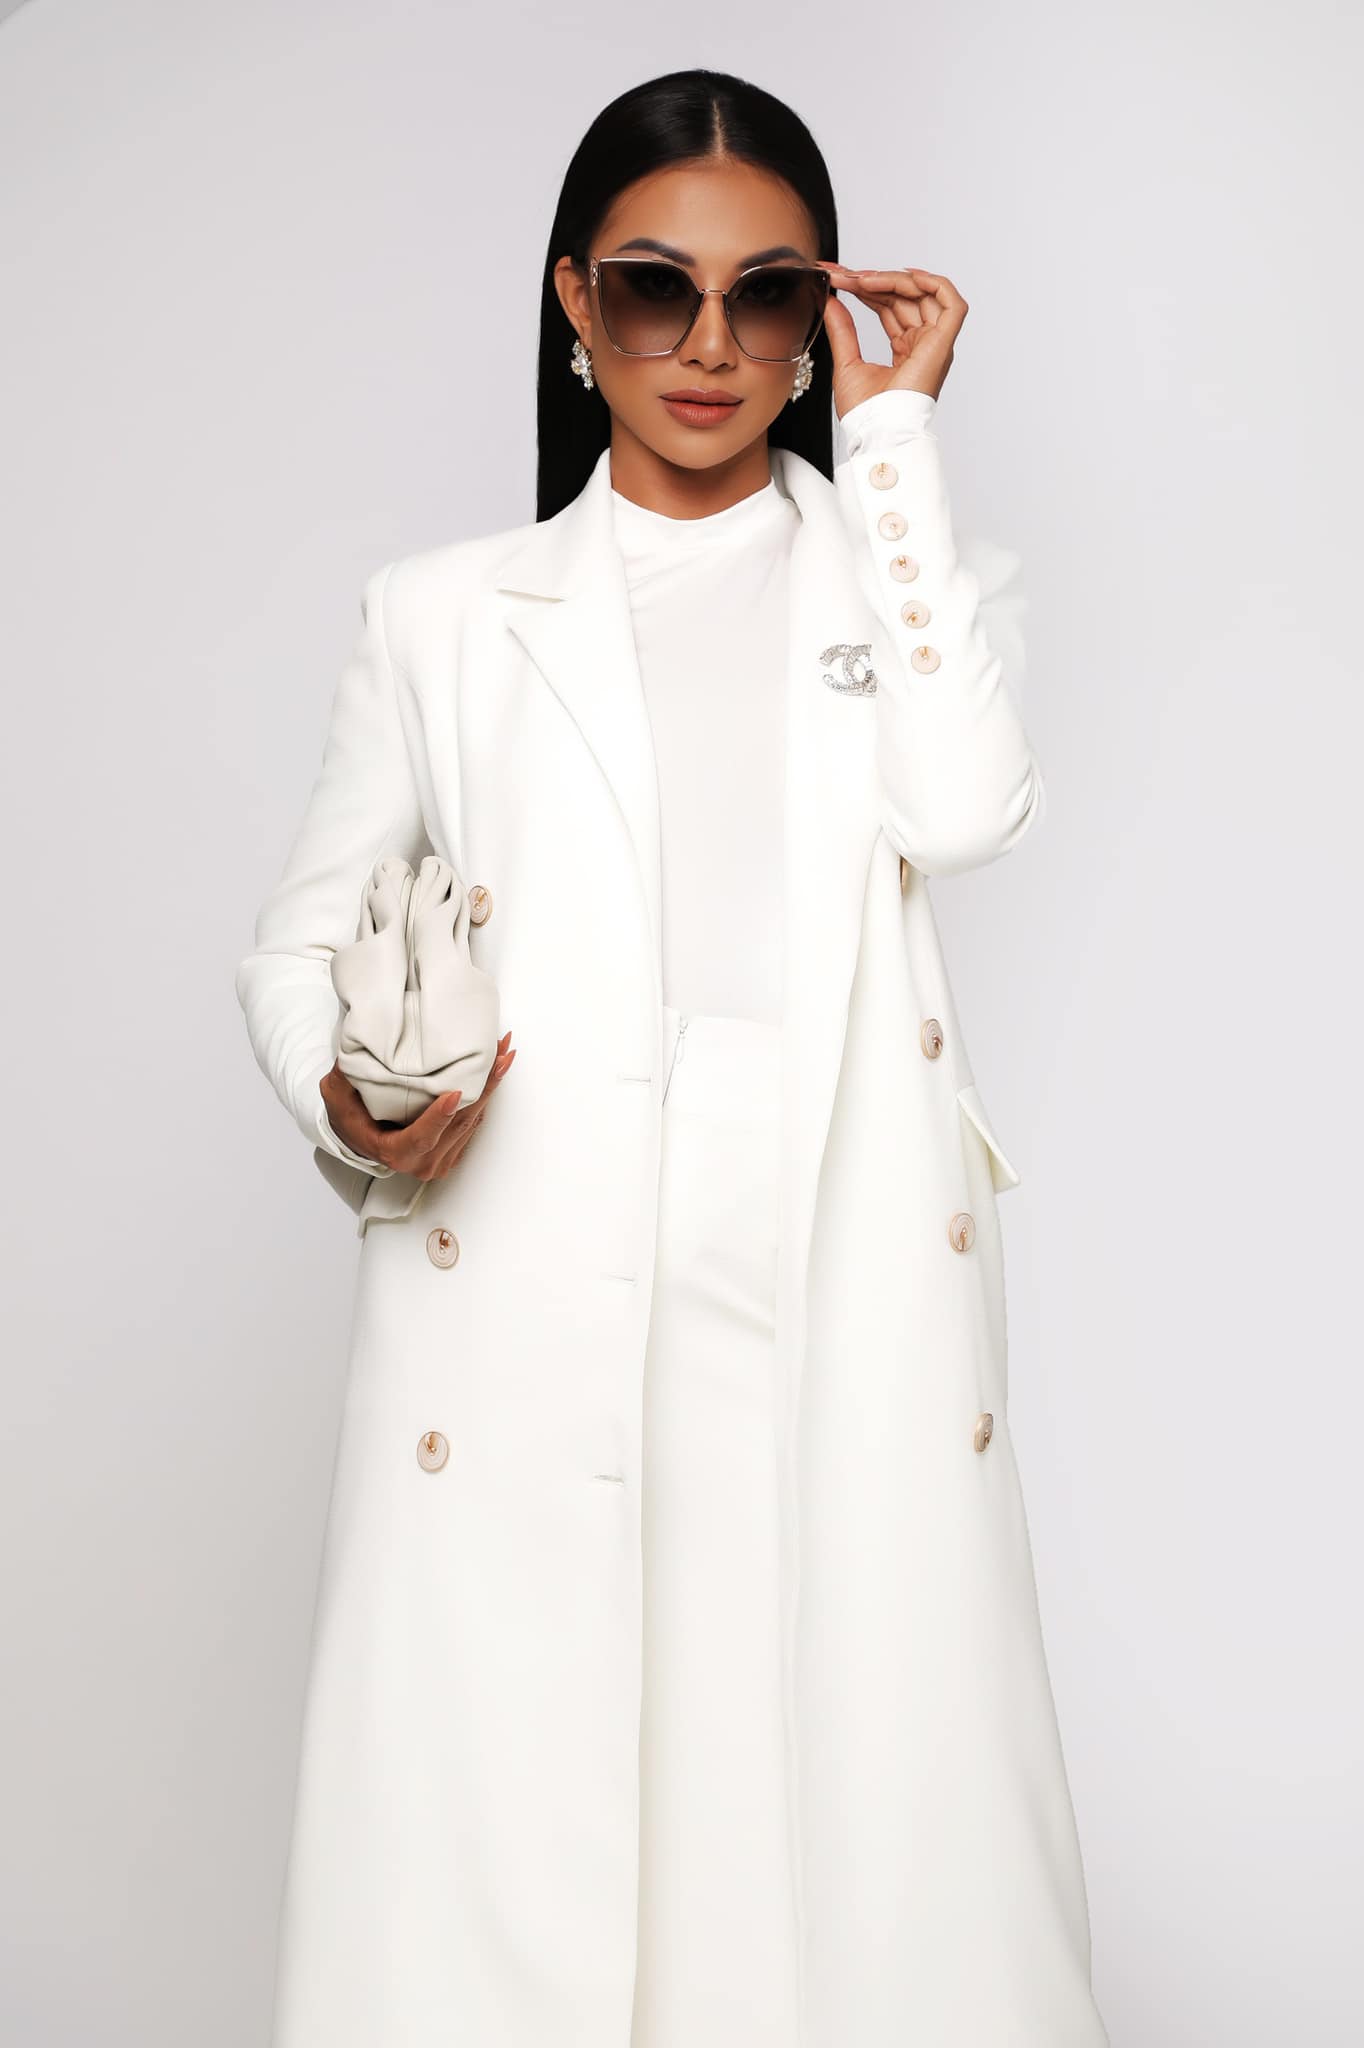 Kim Duyên khoe outfit cho buổi phỏng vấn kín tại Miss Universe 2021. Cô hiện đang chuẩn bị cho đêm thi Trang phục dân tộc và Bán kết Miss Universe lần thứ 70 diễn ra vào lúc 0:00 (giờ Việt Nam) trên kênh Youtube của Miss Universe.